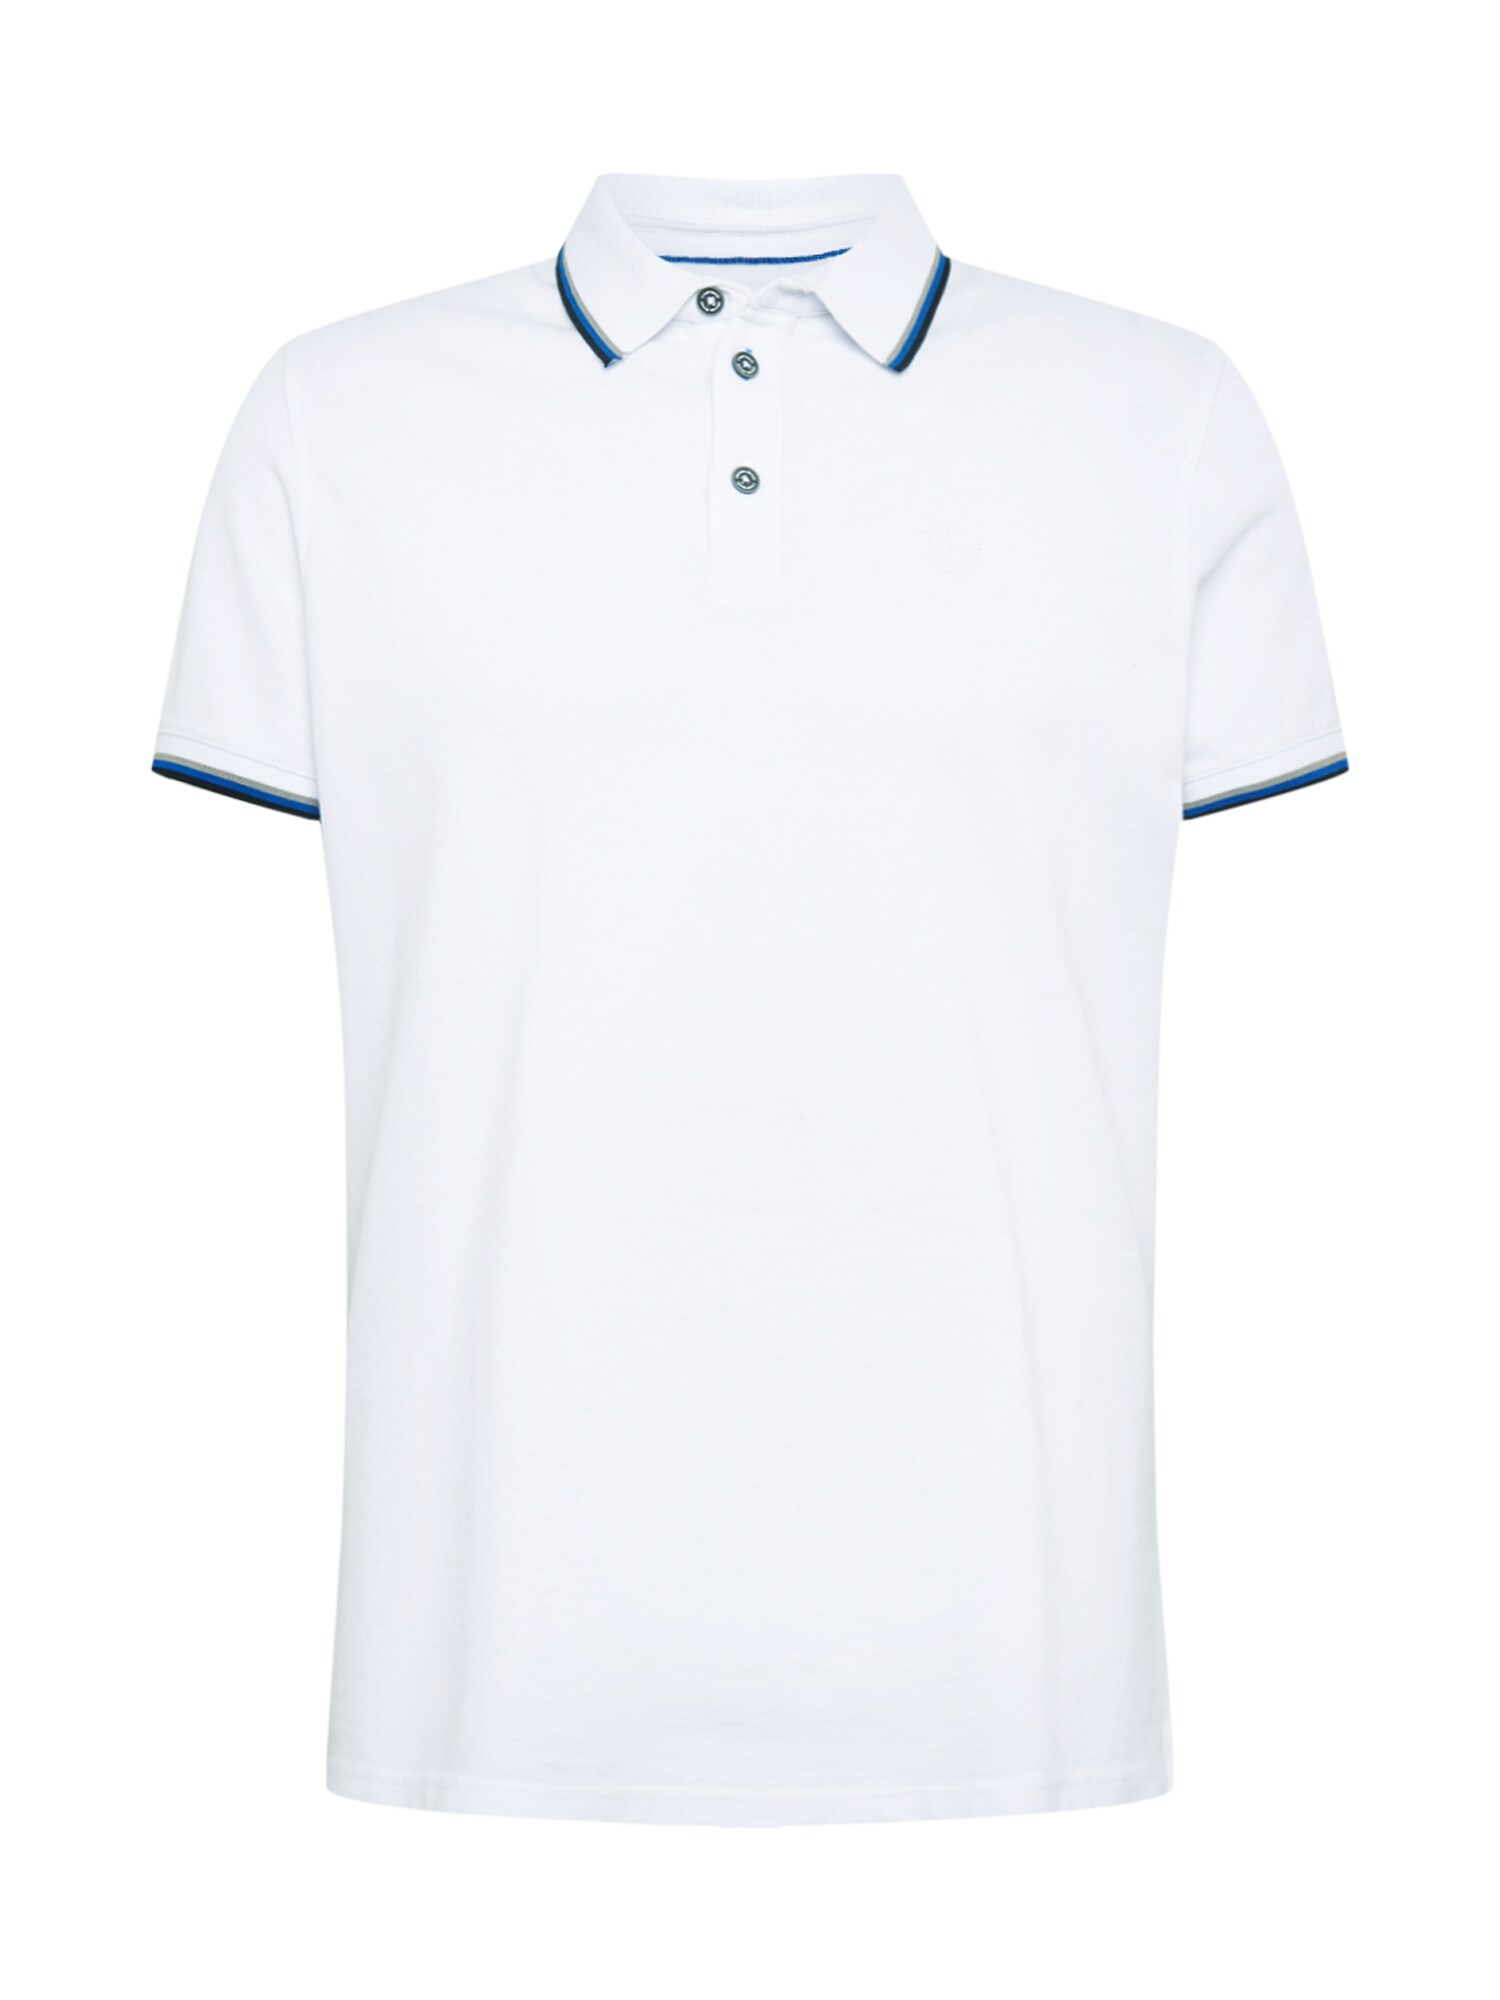 CAMP DAVID Marškinėliai  balta / mėlyna